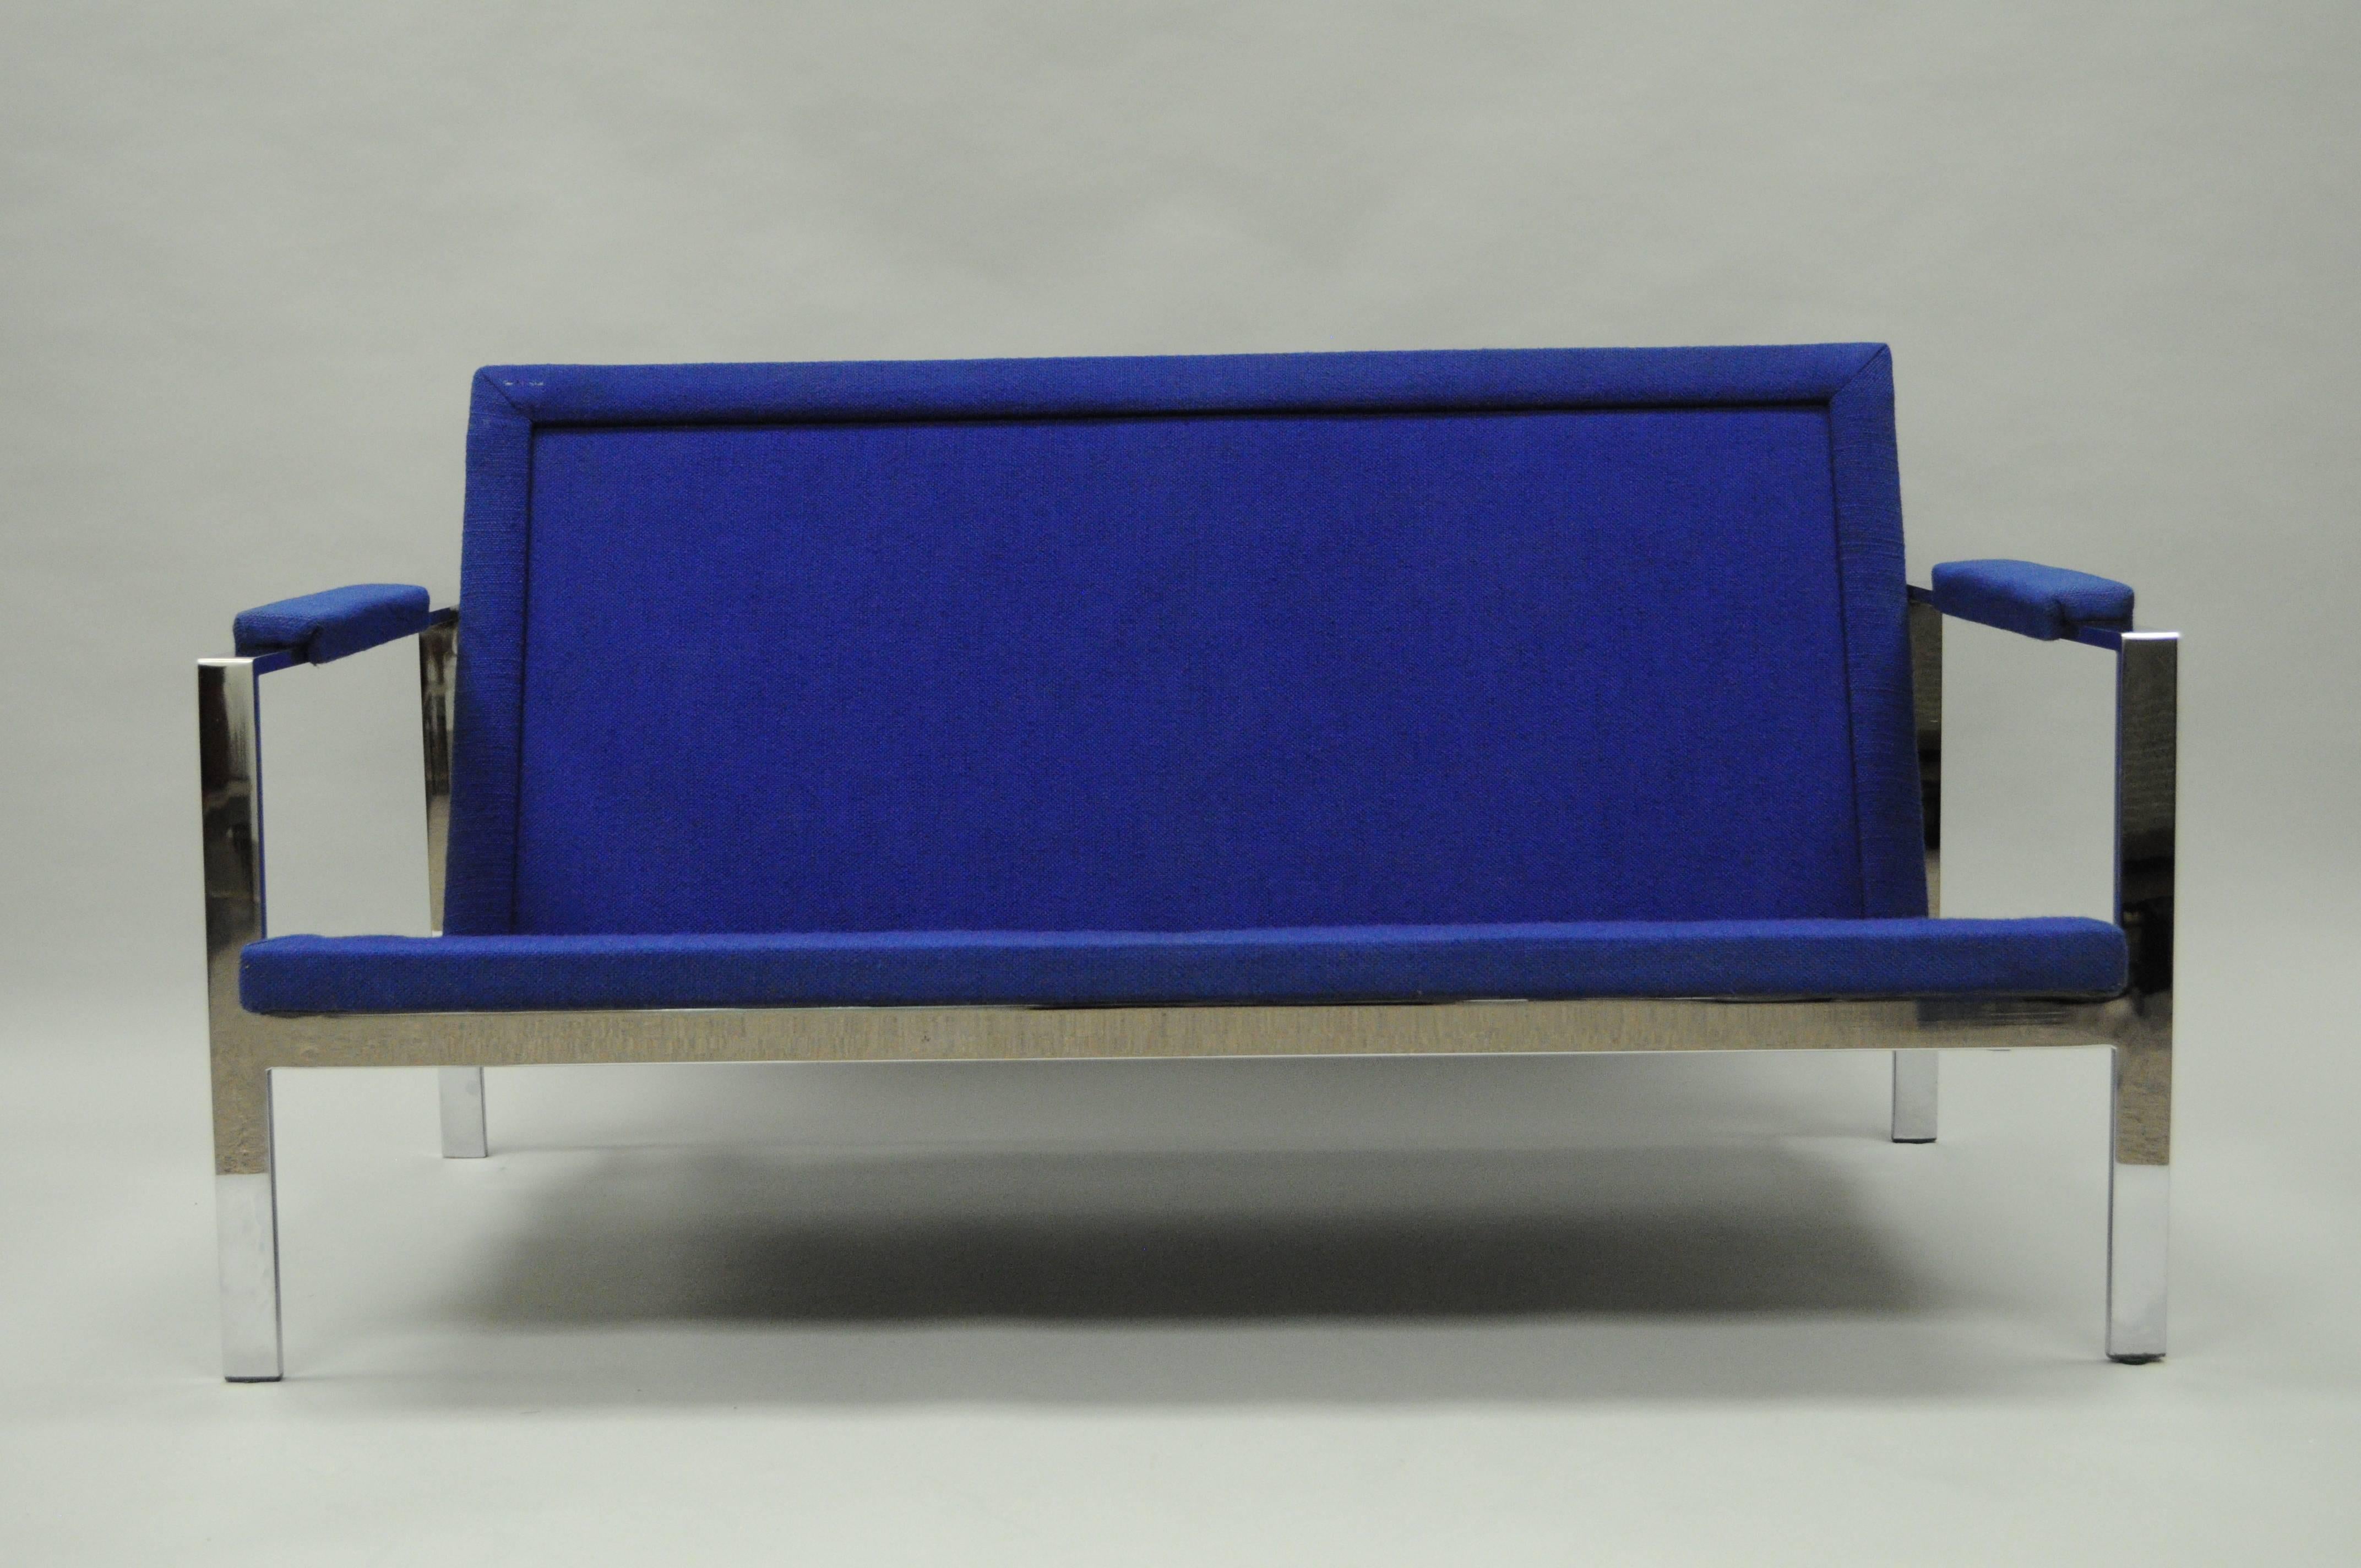 Auffallend Vintage Mid-Century Modern Milo Baughman Stil Chrom flache Bar Sofa Loveseat Sofa. Der Stuhl hat ein elegantes Gestell aus poliertem Chrom mit blau gepolstertem Sitz und Armlehnen. Wird nicht mit Kissen geliefert.